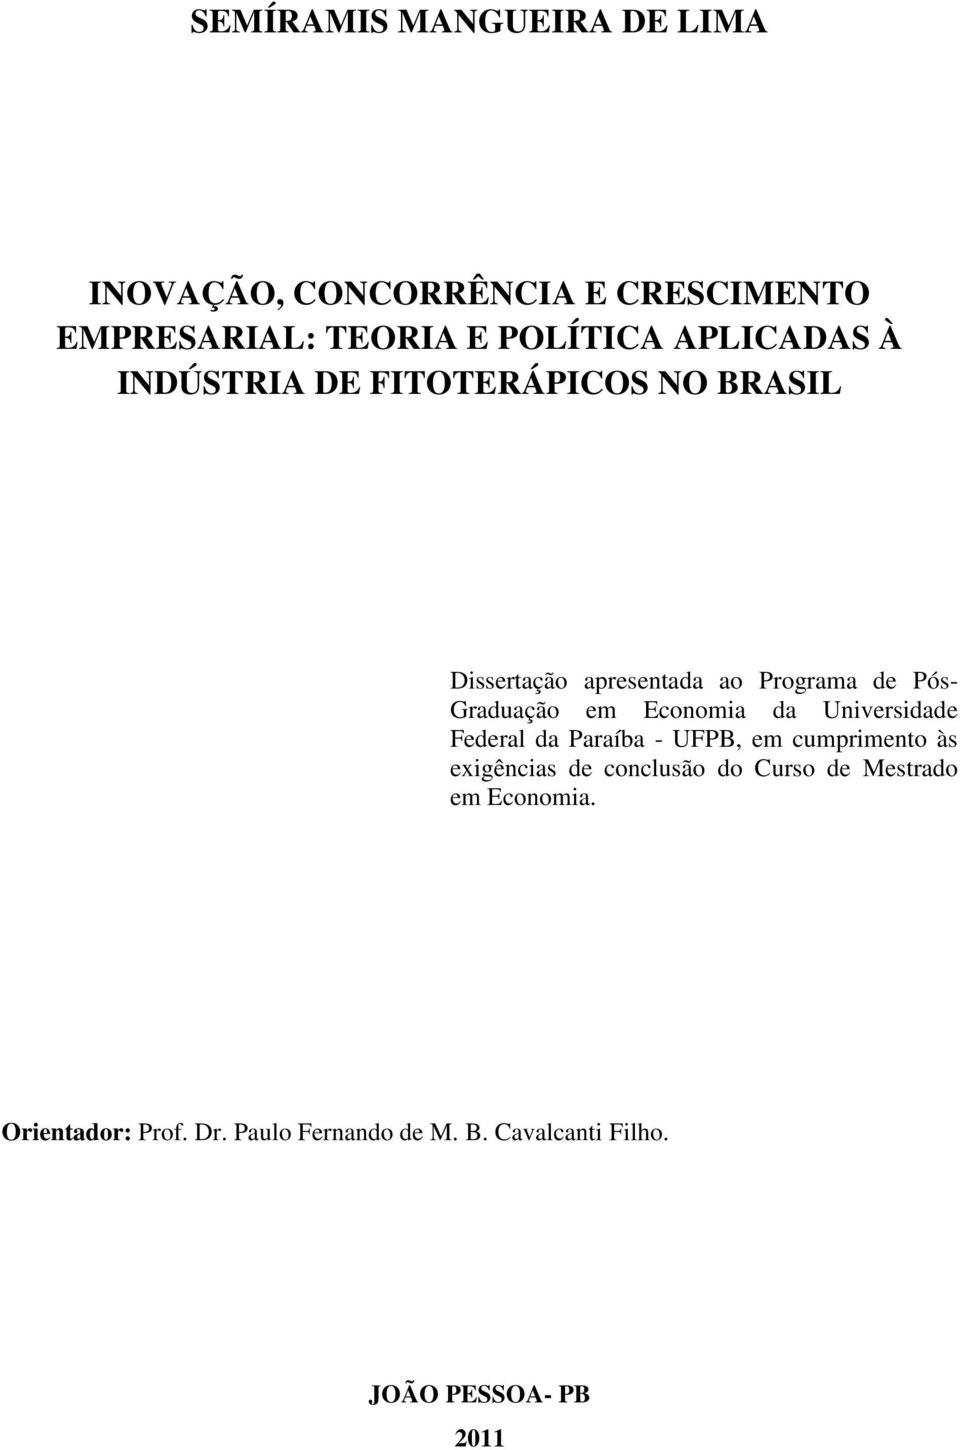 em Economia da Universidade Federal da Paraíba - UFPB, em cumprimento às exigências de conclusão do